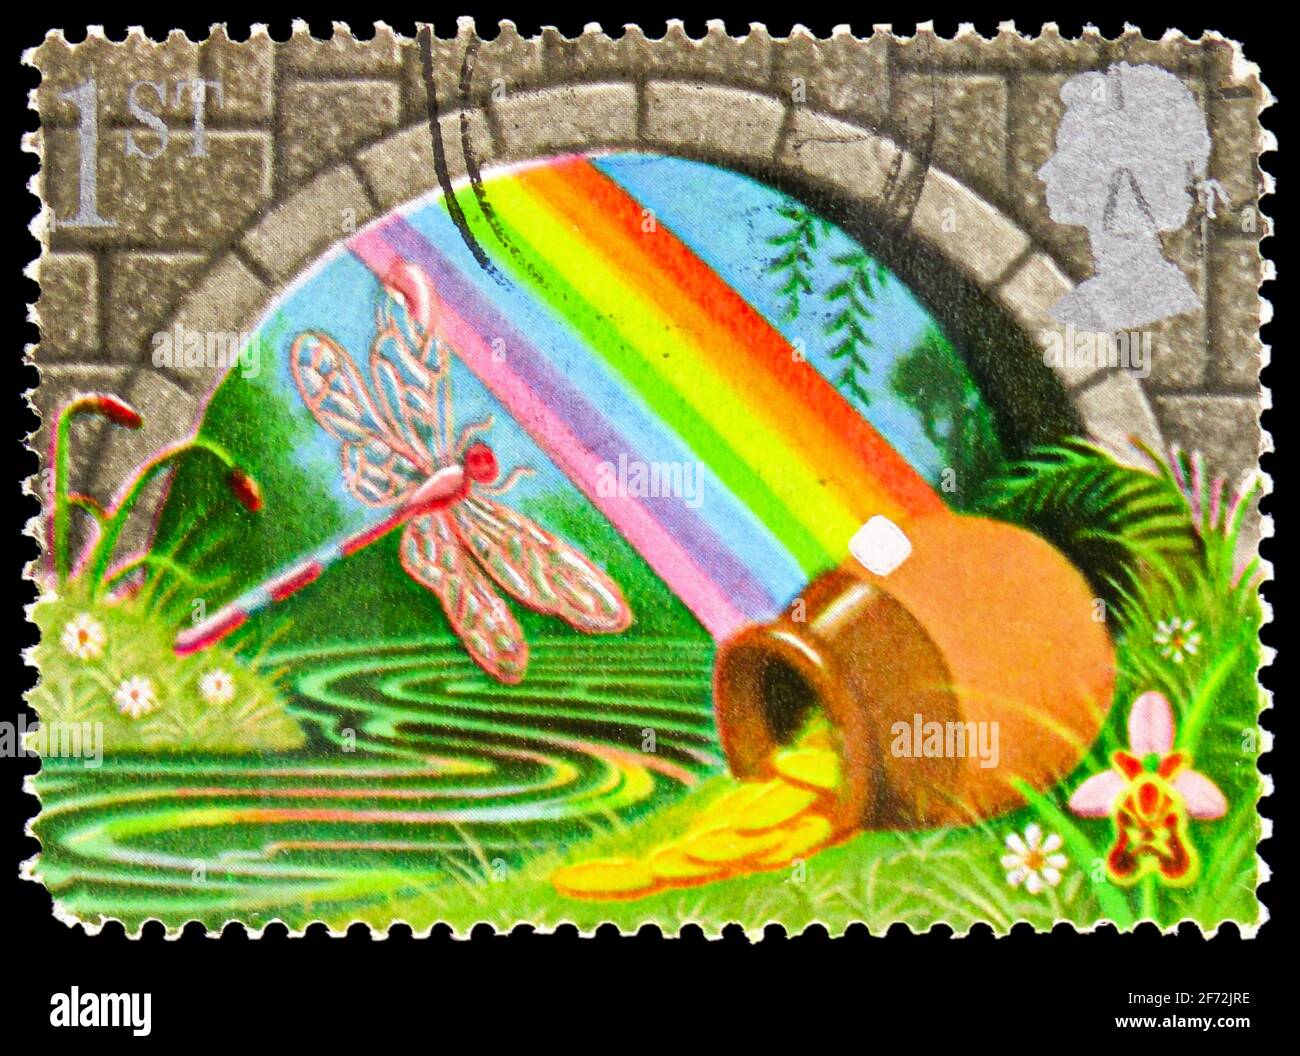 MOSCOU, RUSSIE - 22 DÉCEMBRE 2020: Timbre-poste imprimé au Royaume-Uni montre Pot of Gold and Rainbow, Greetings Timbres 1991 - symboles de chance ser Banque D'Images